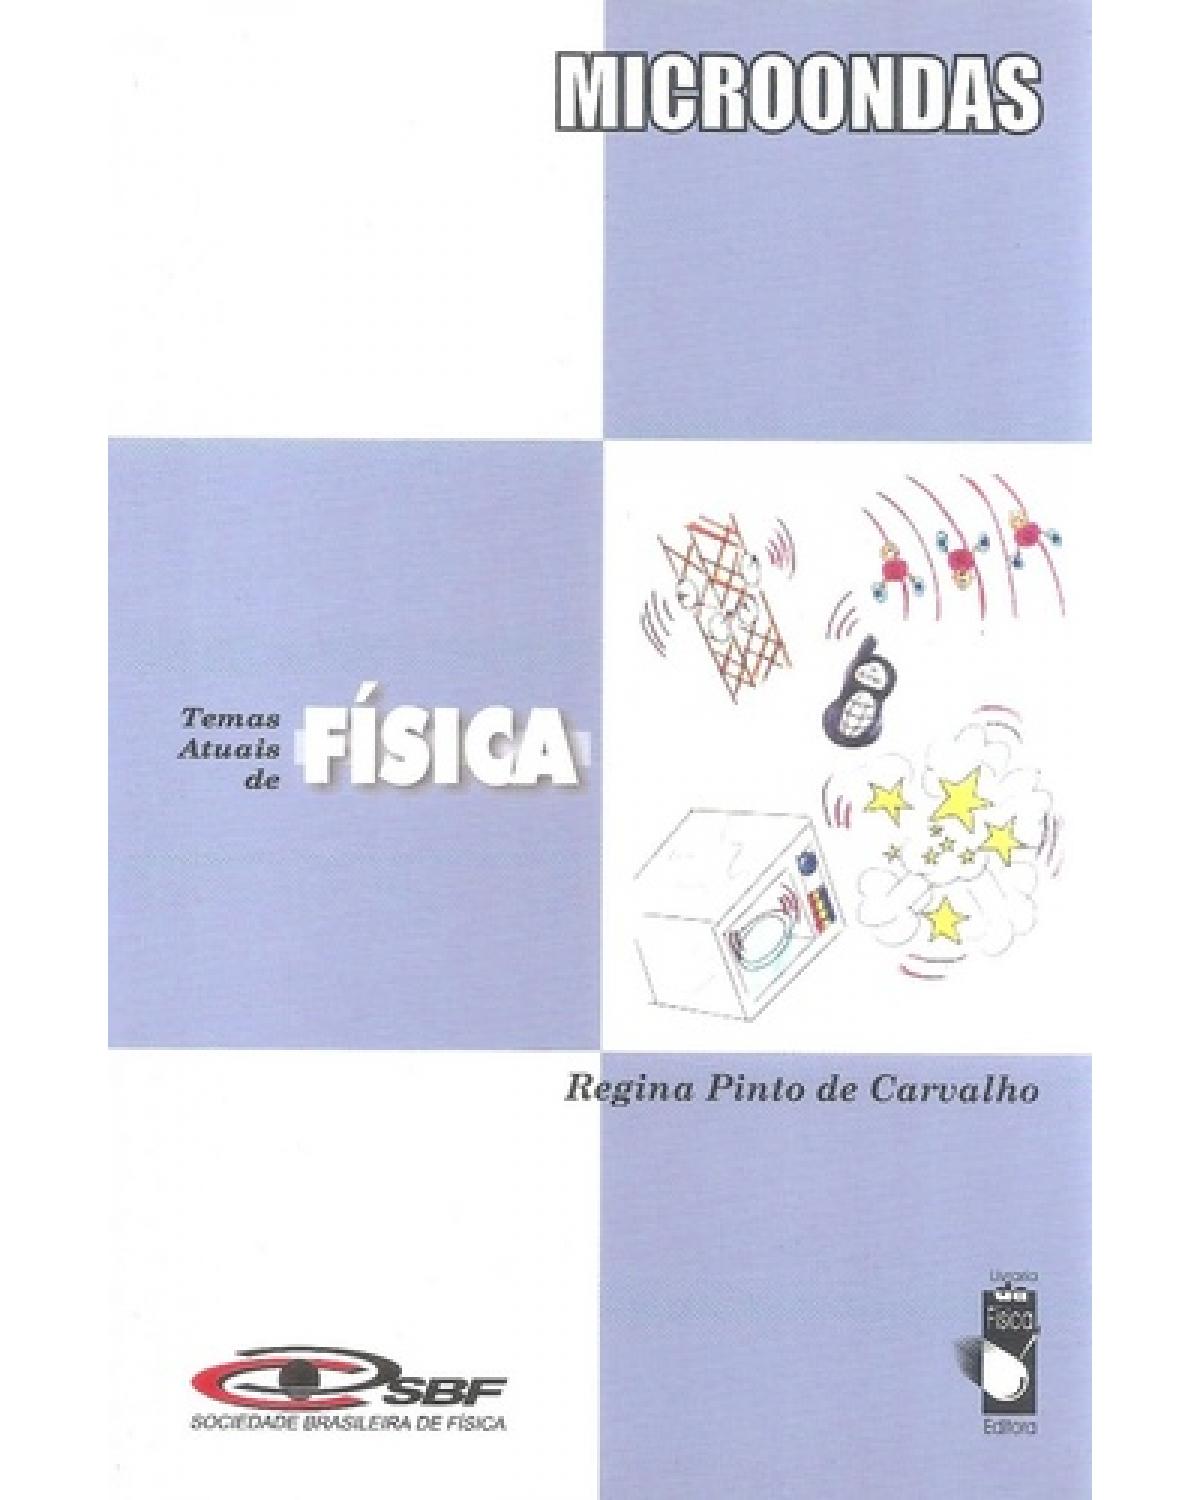 Microondas: coleção temas atuais de física / sbf - 1ª Edição | 2005